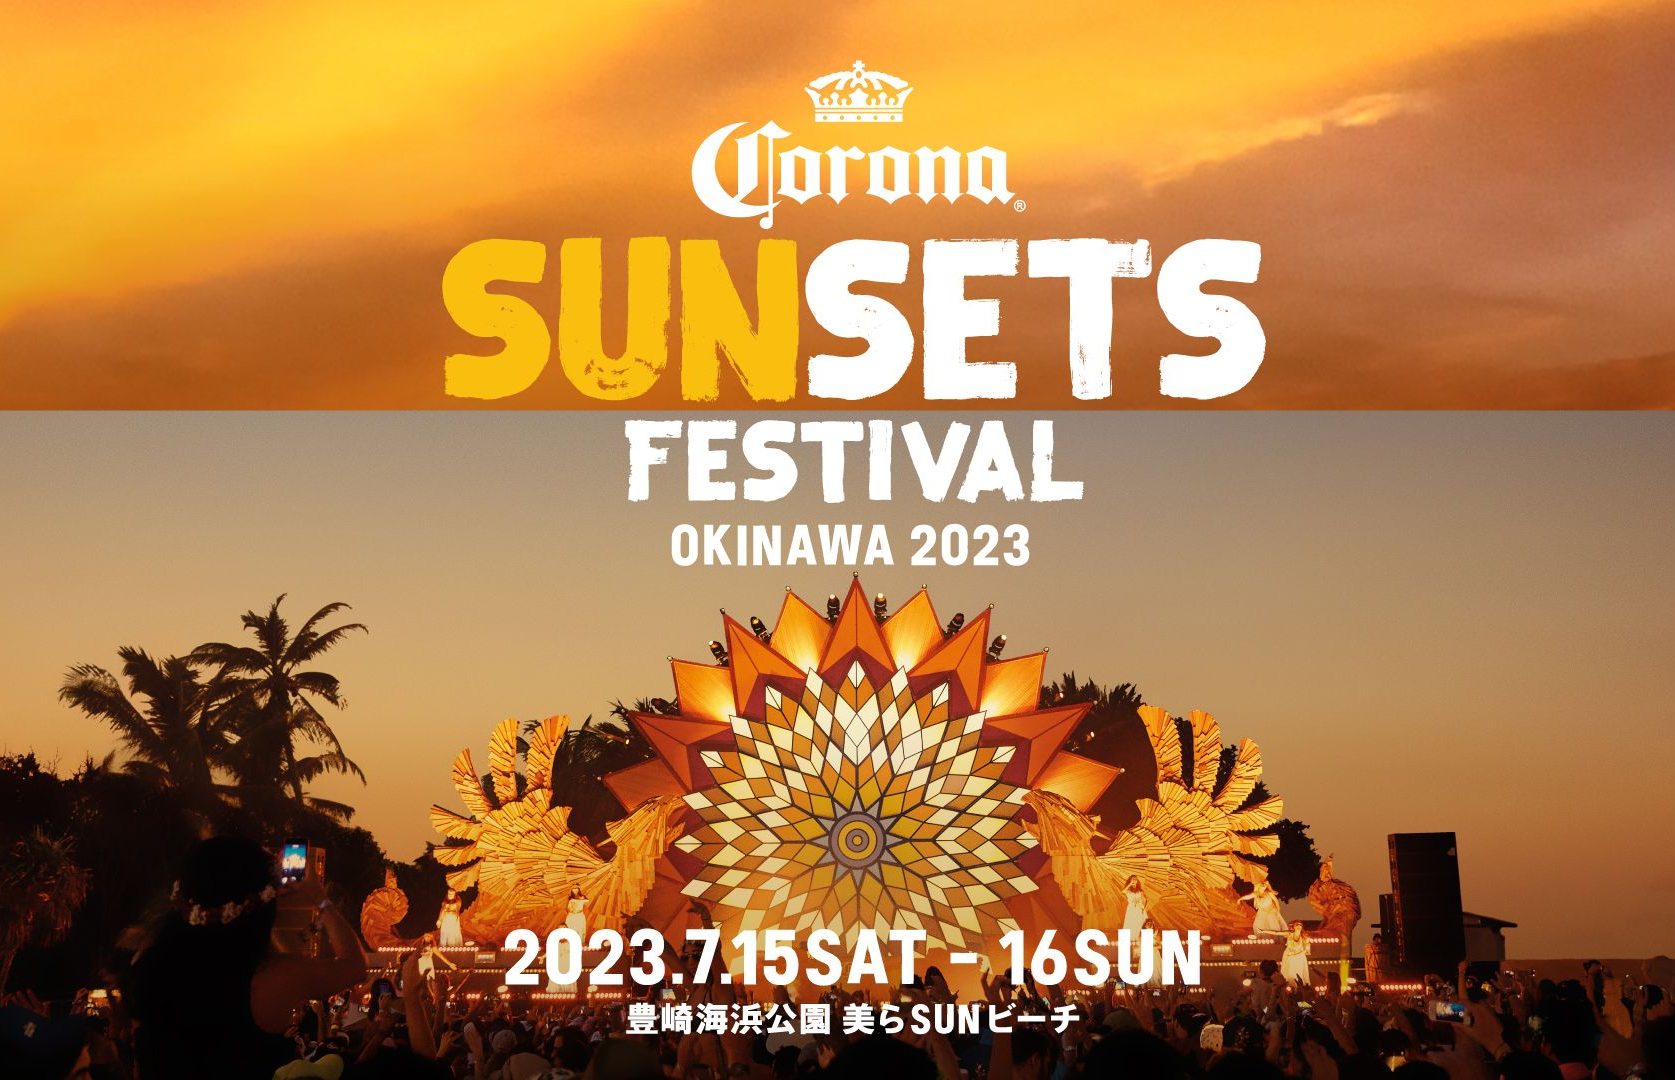 コロナビール × 音楽を楽しめるビーチフェス『CORONA SUNSETS FESTIVAL』が⽇本で4年ぶりに開催！世界 14 カ国で開催決定！